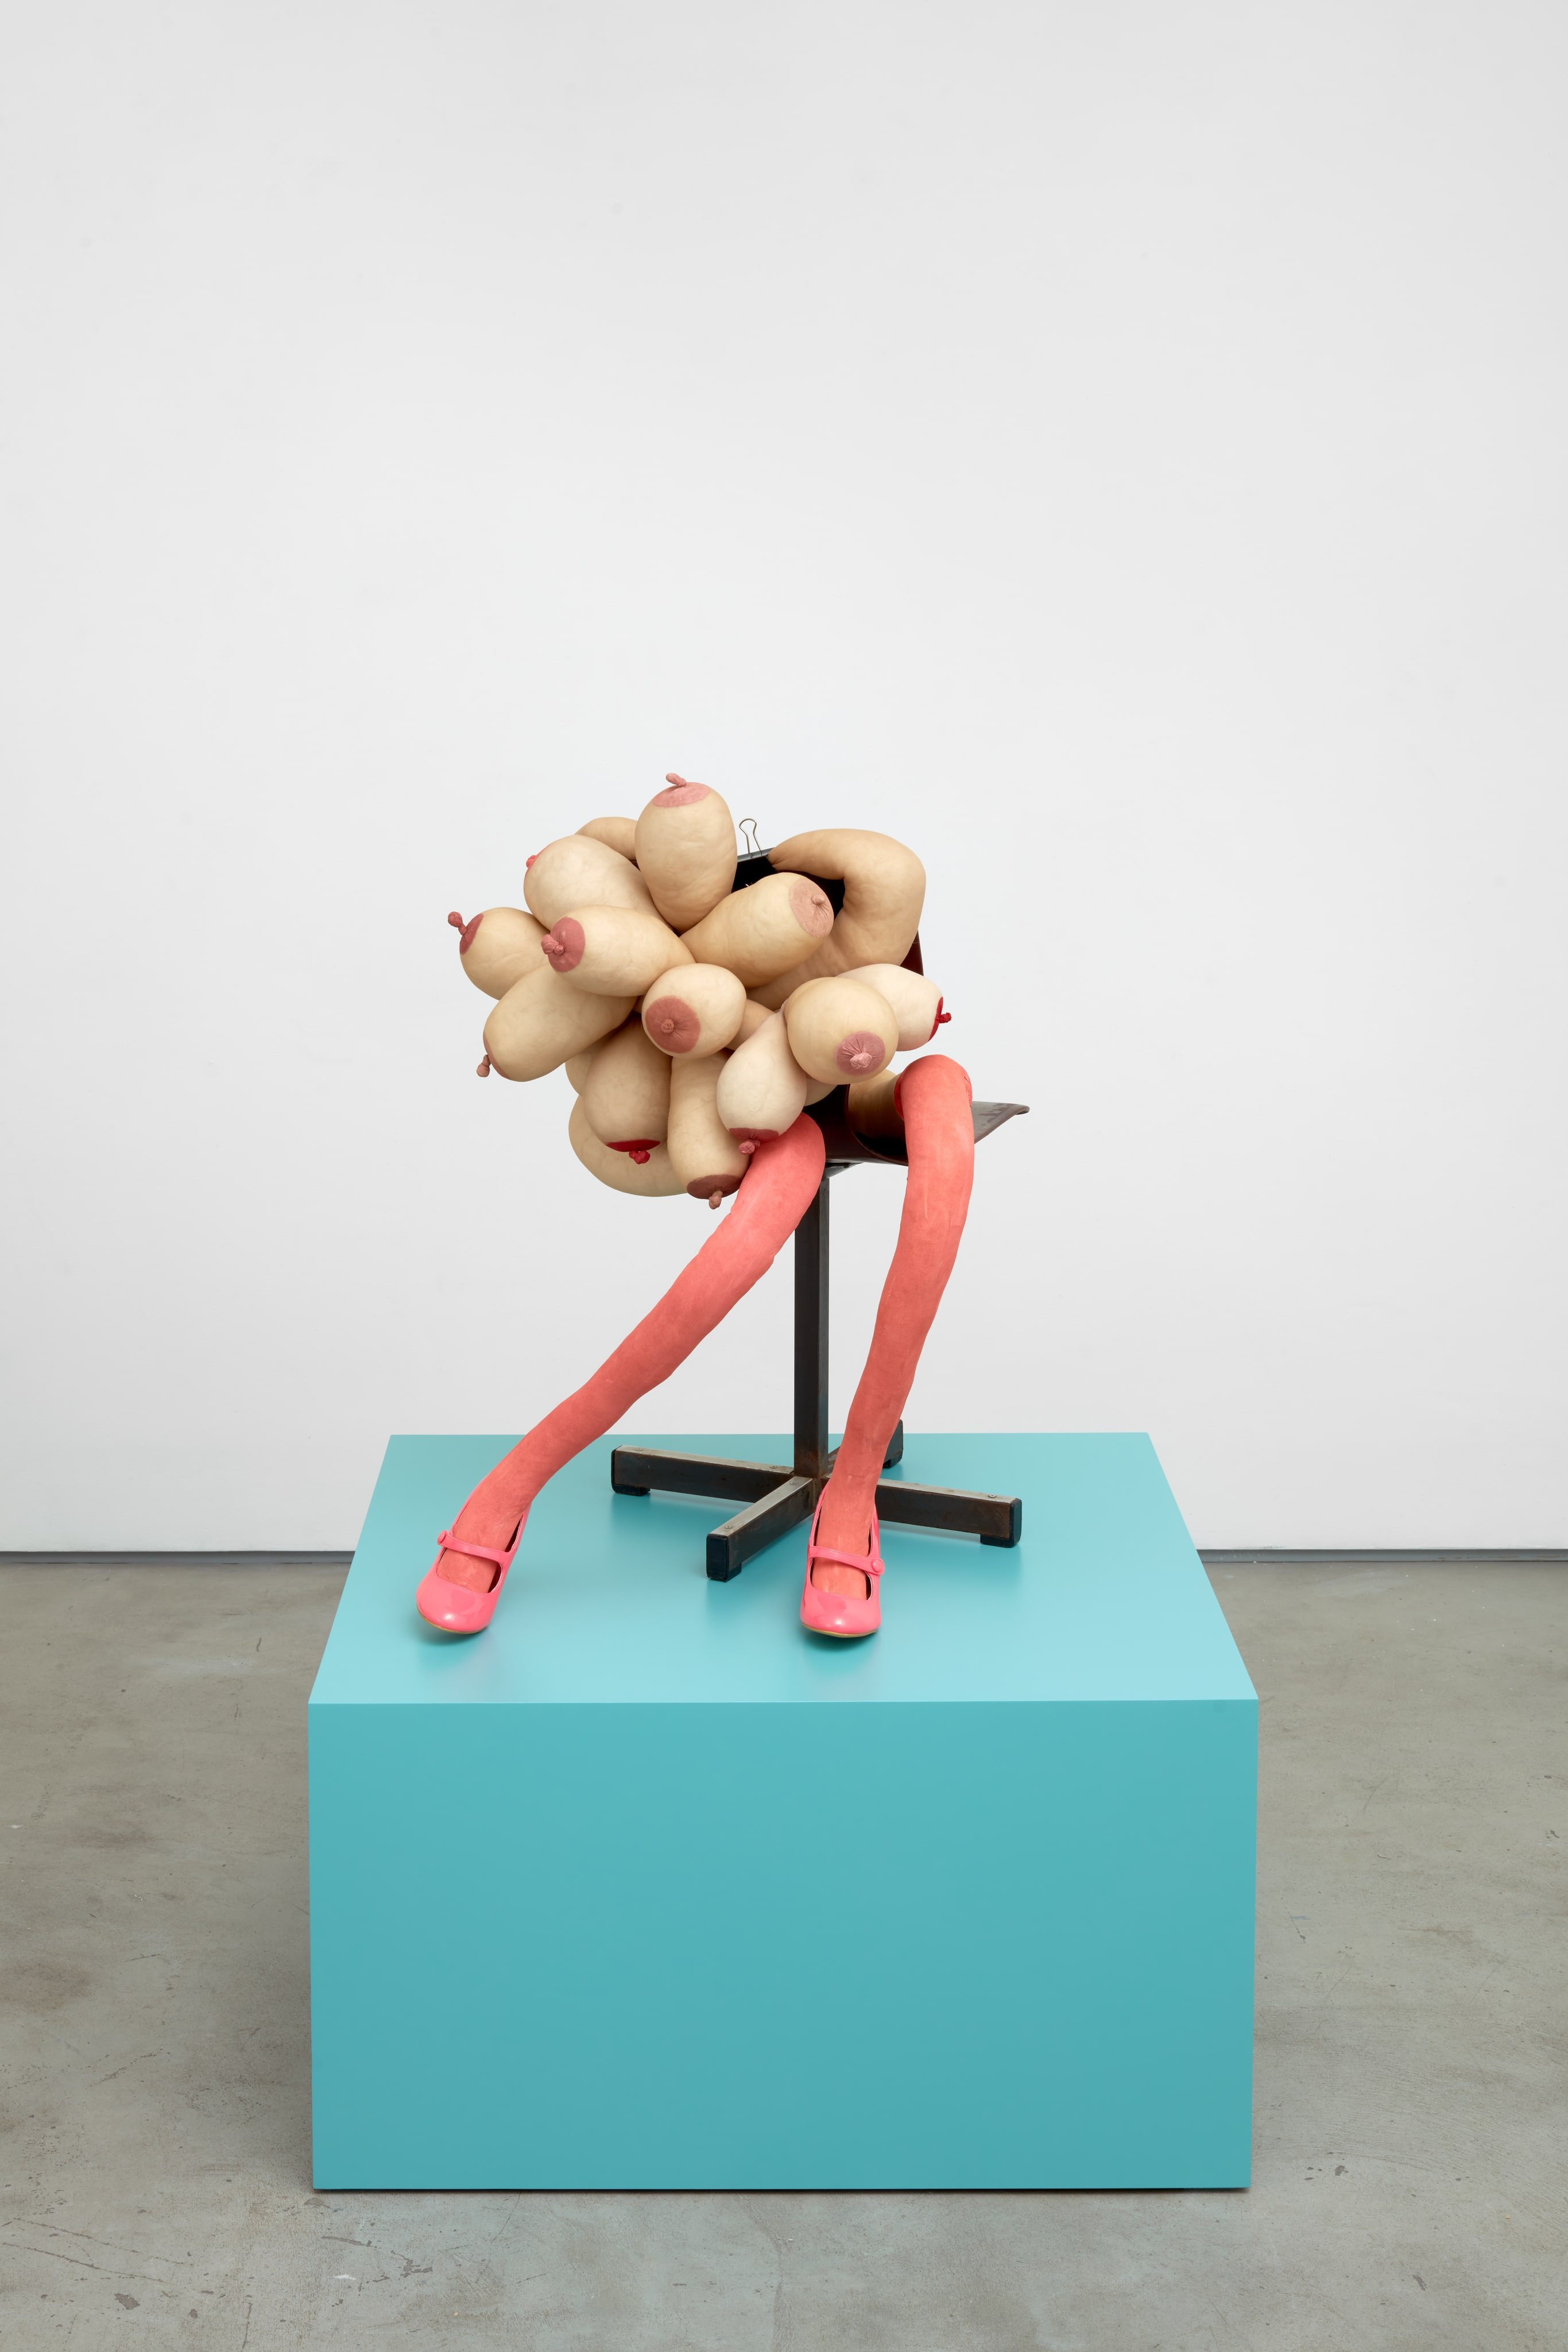 “Sugar” (2020). Collants, fil, laine, pince, chaussures, peinture acrylique et chaise en métal. Sculpture : 93 x 63 x 82 cm. Socle : 50,8 x 91,4 x 91,4 cm. 
